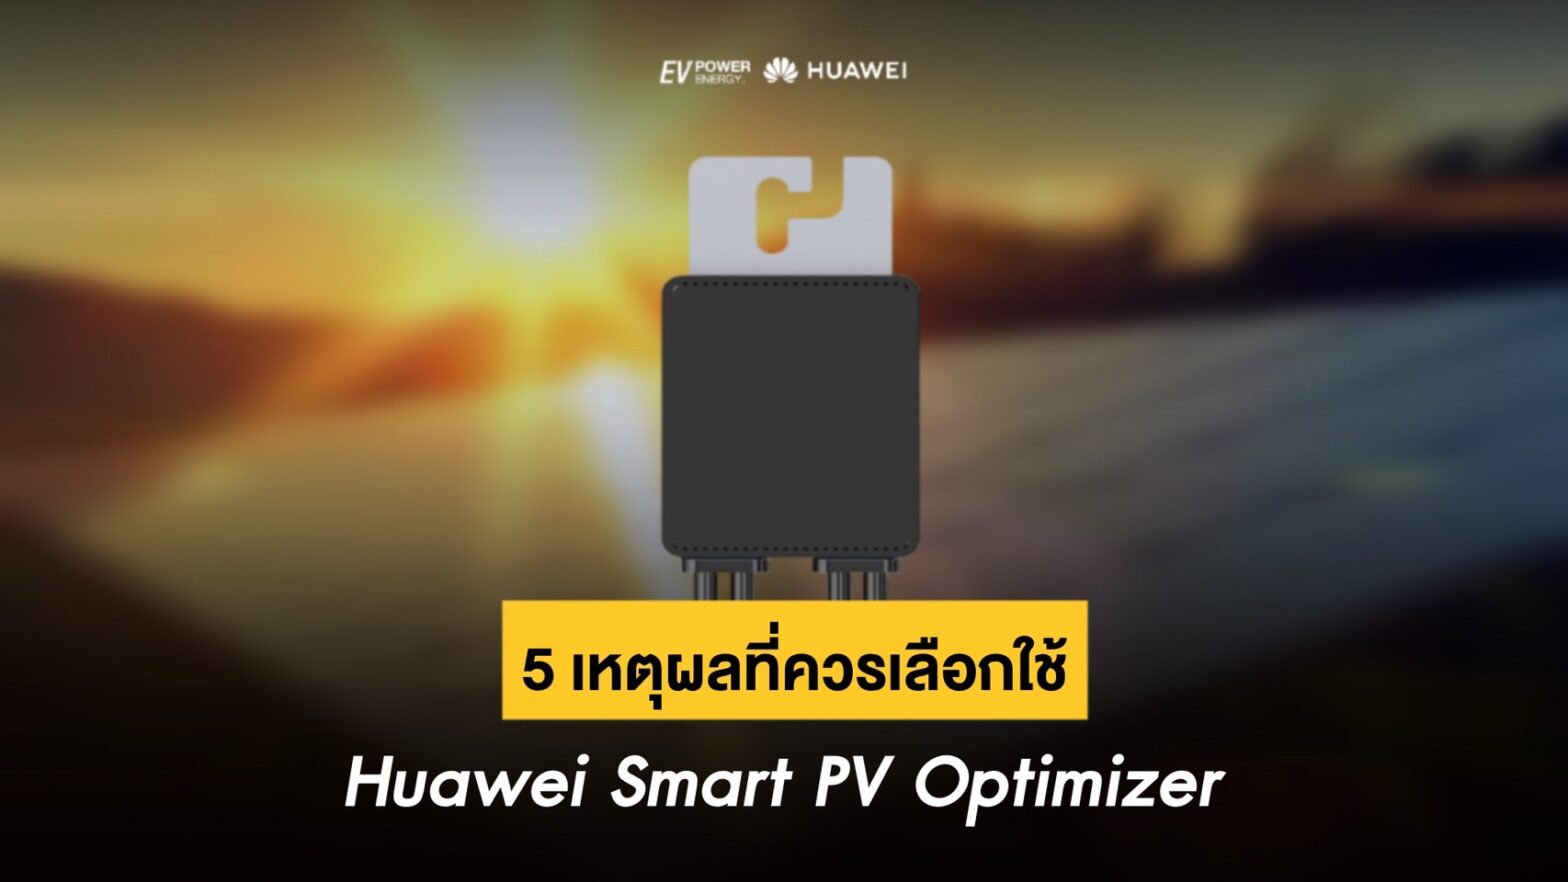 5 เหตุผลที่ควรใช้ Huawei Smart PV Optimizer กับระบบโซล่าเซลล์ของคุณ 1